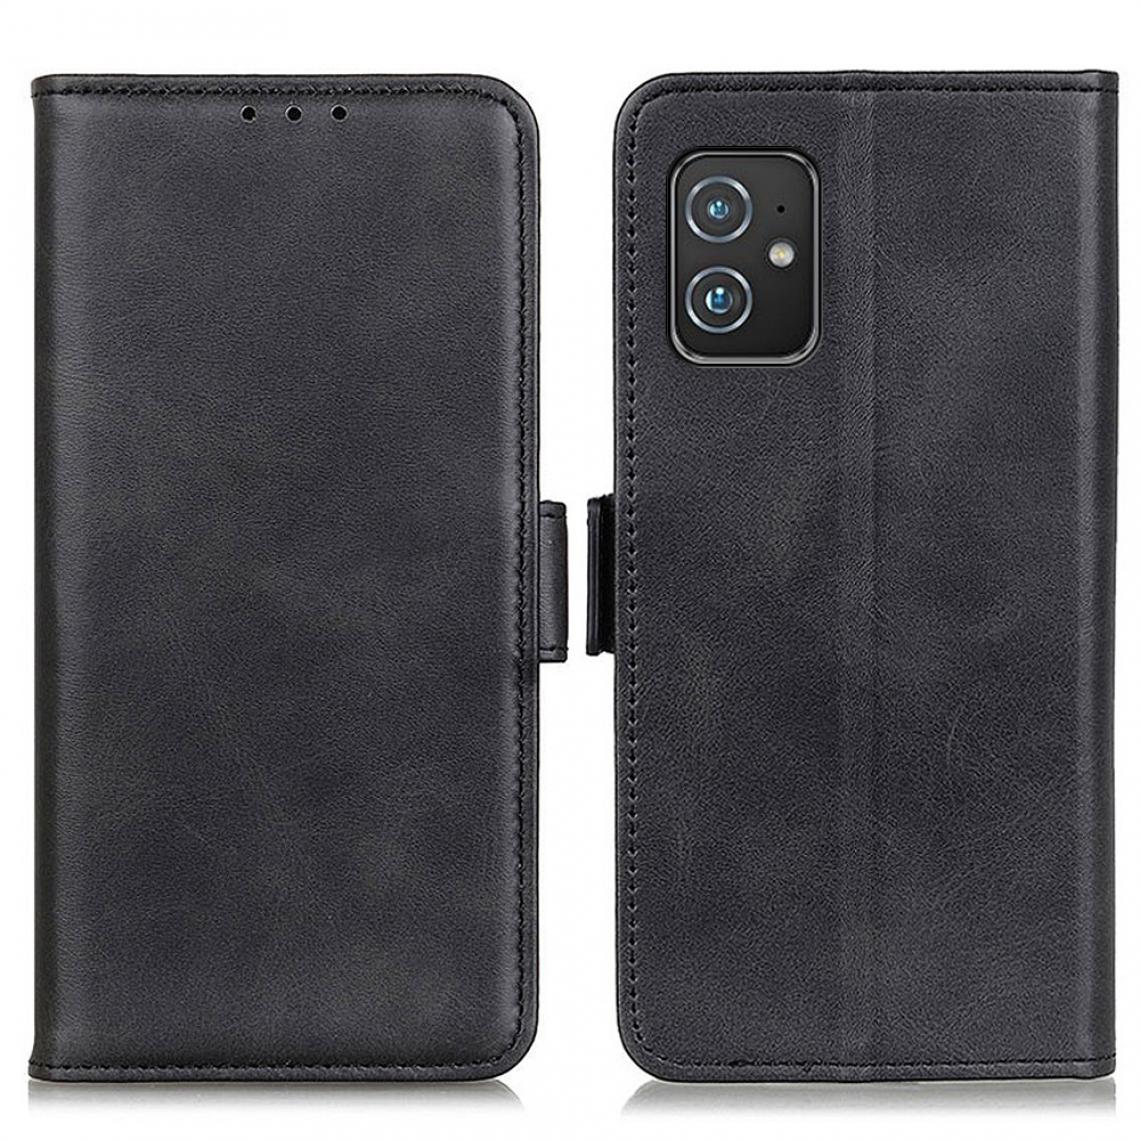 Other - Etui en PU Double fermoir magnétique noir pour votre Asus Zenfone 8 - Coque, étui smartphone